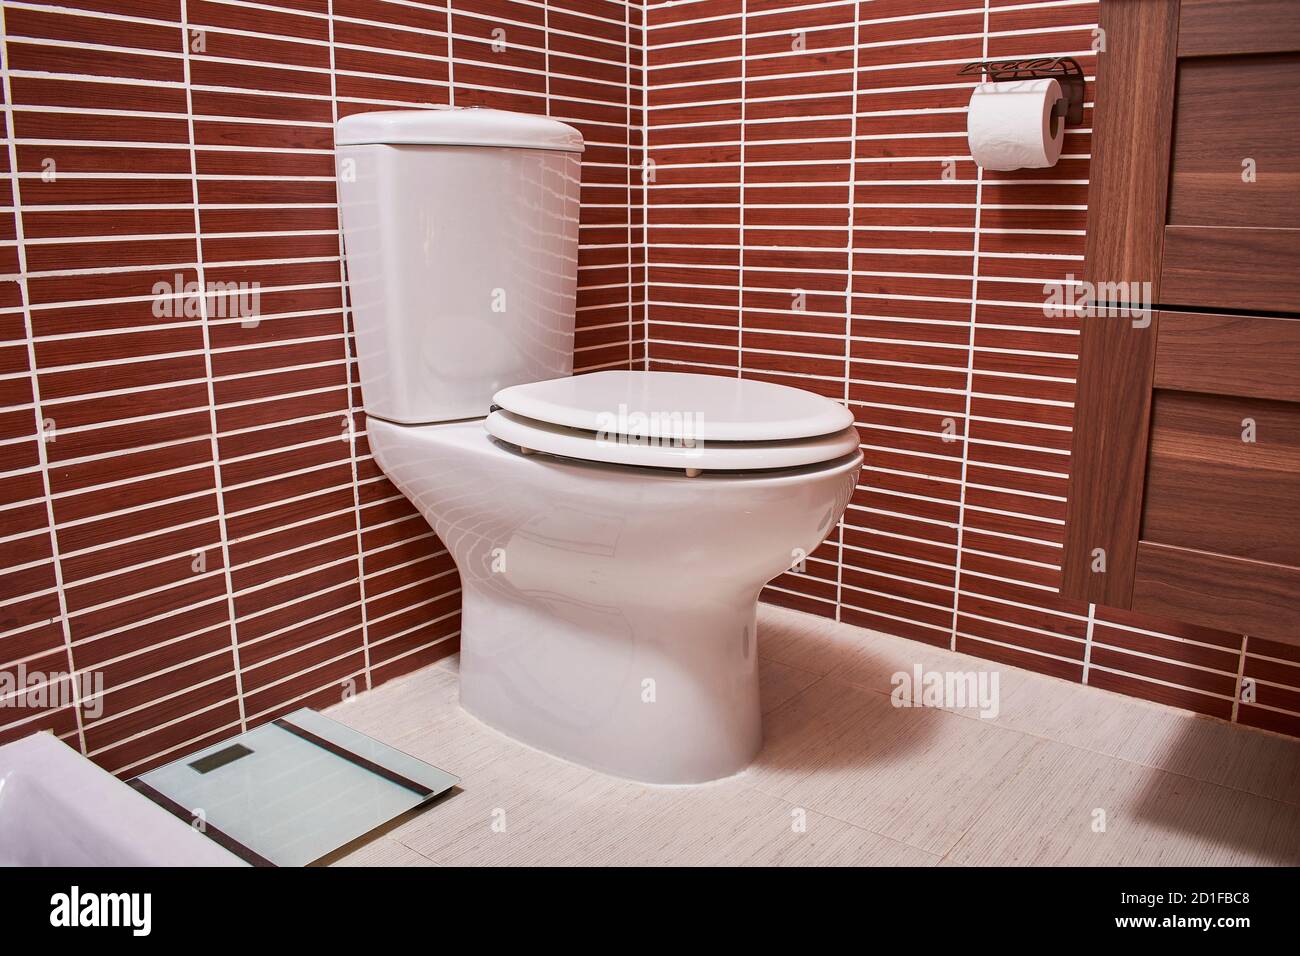 cuvette de toilette en porcelaine installée dans une salle de bains Banque D'Images